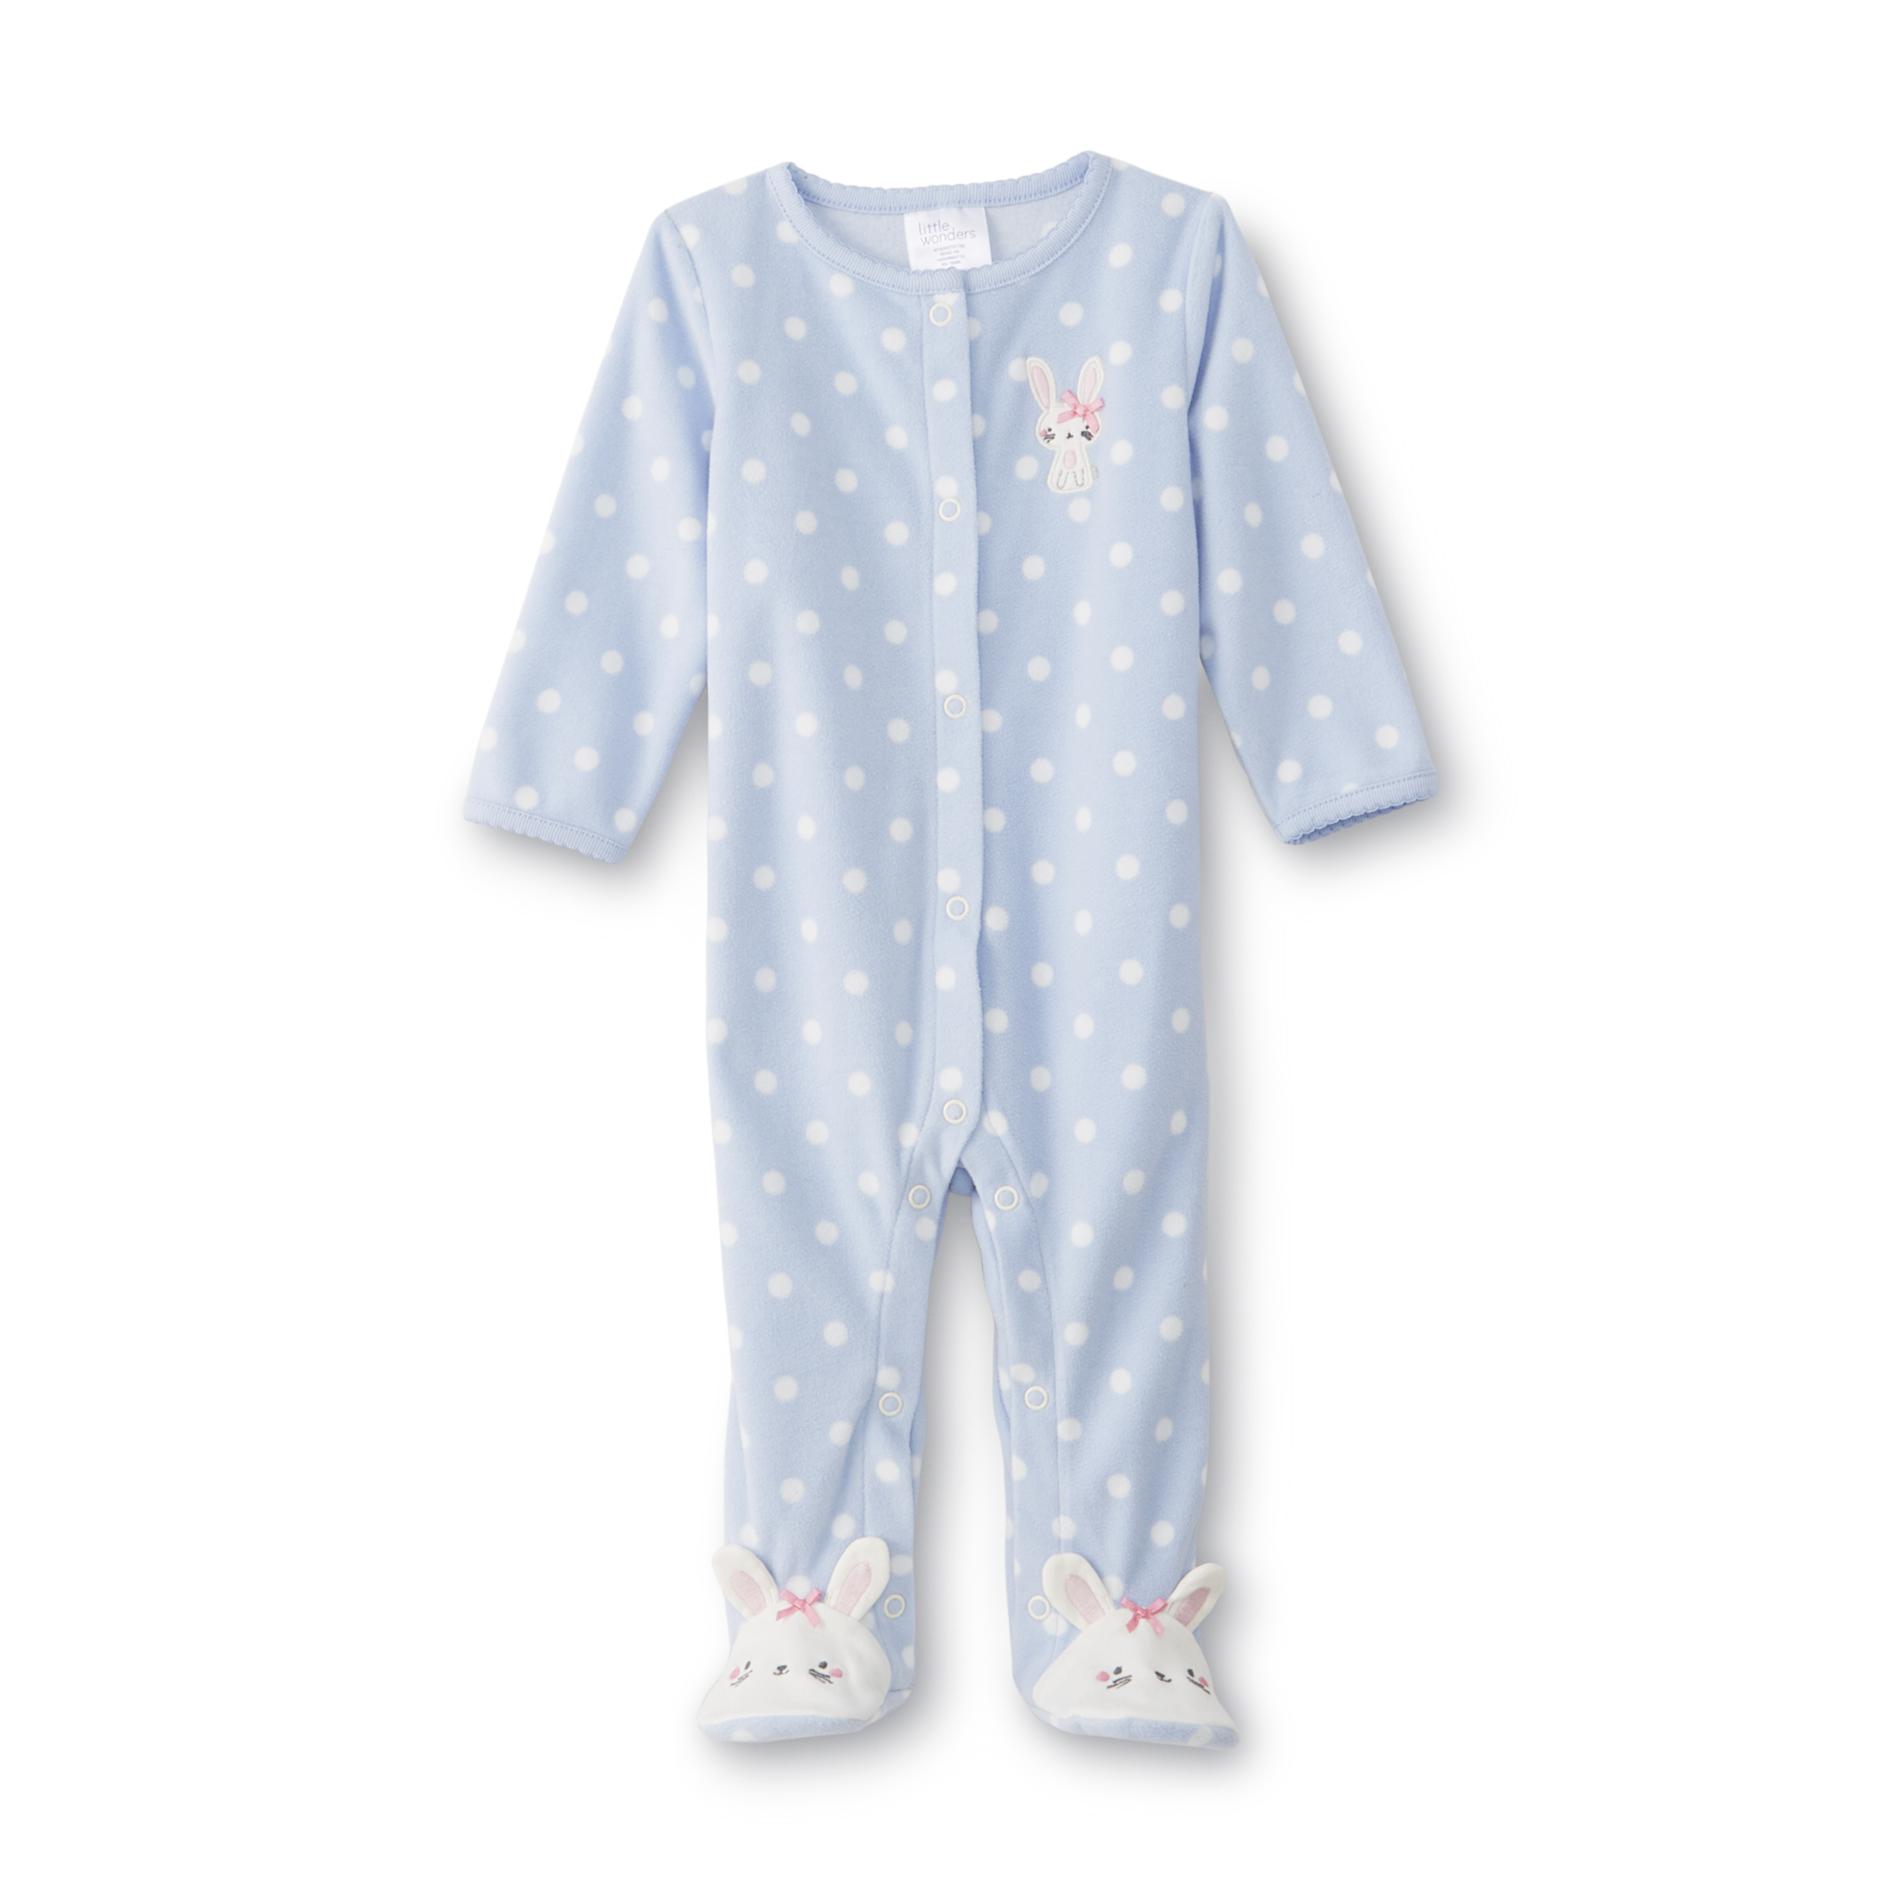 Little Wonders Infant Girl's Fleece Sleeper Pajamas - Bunny